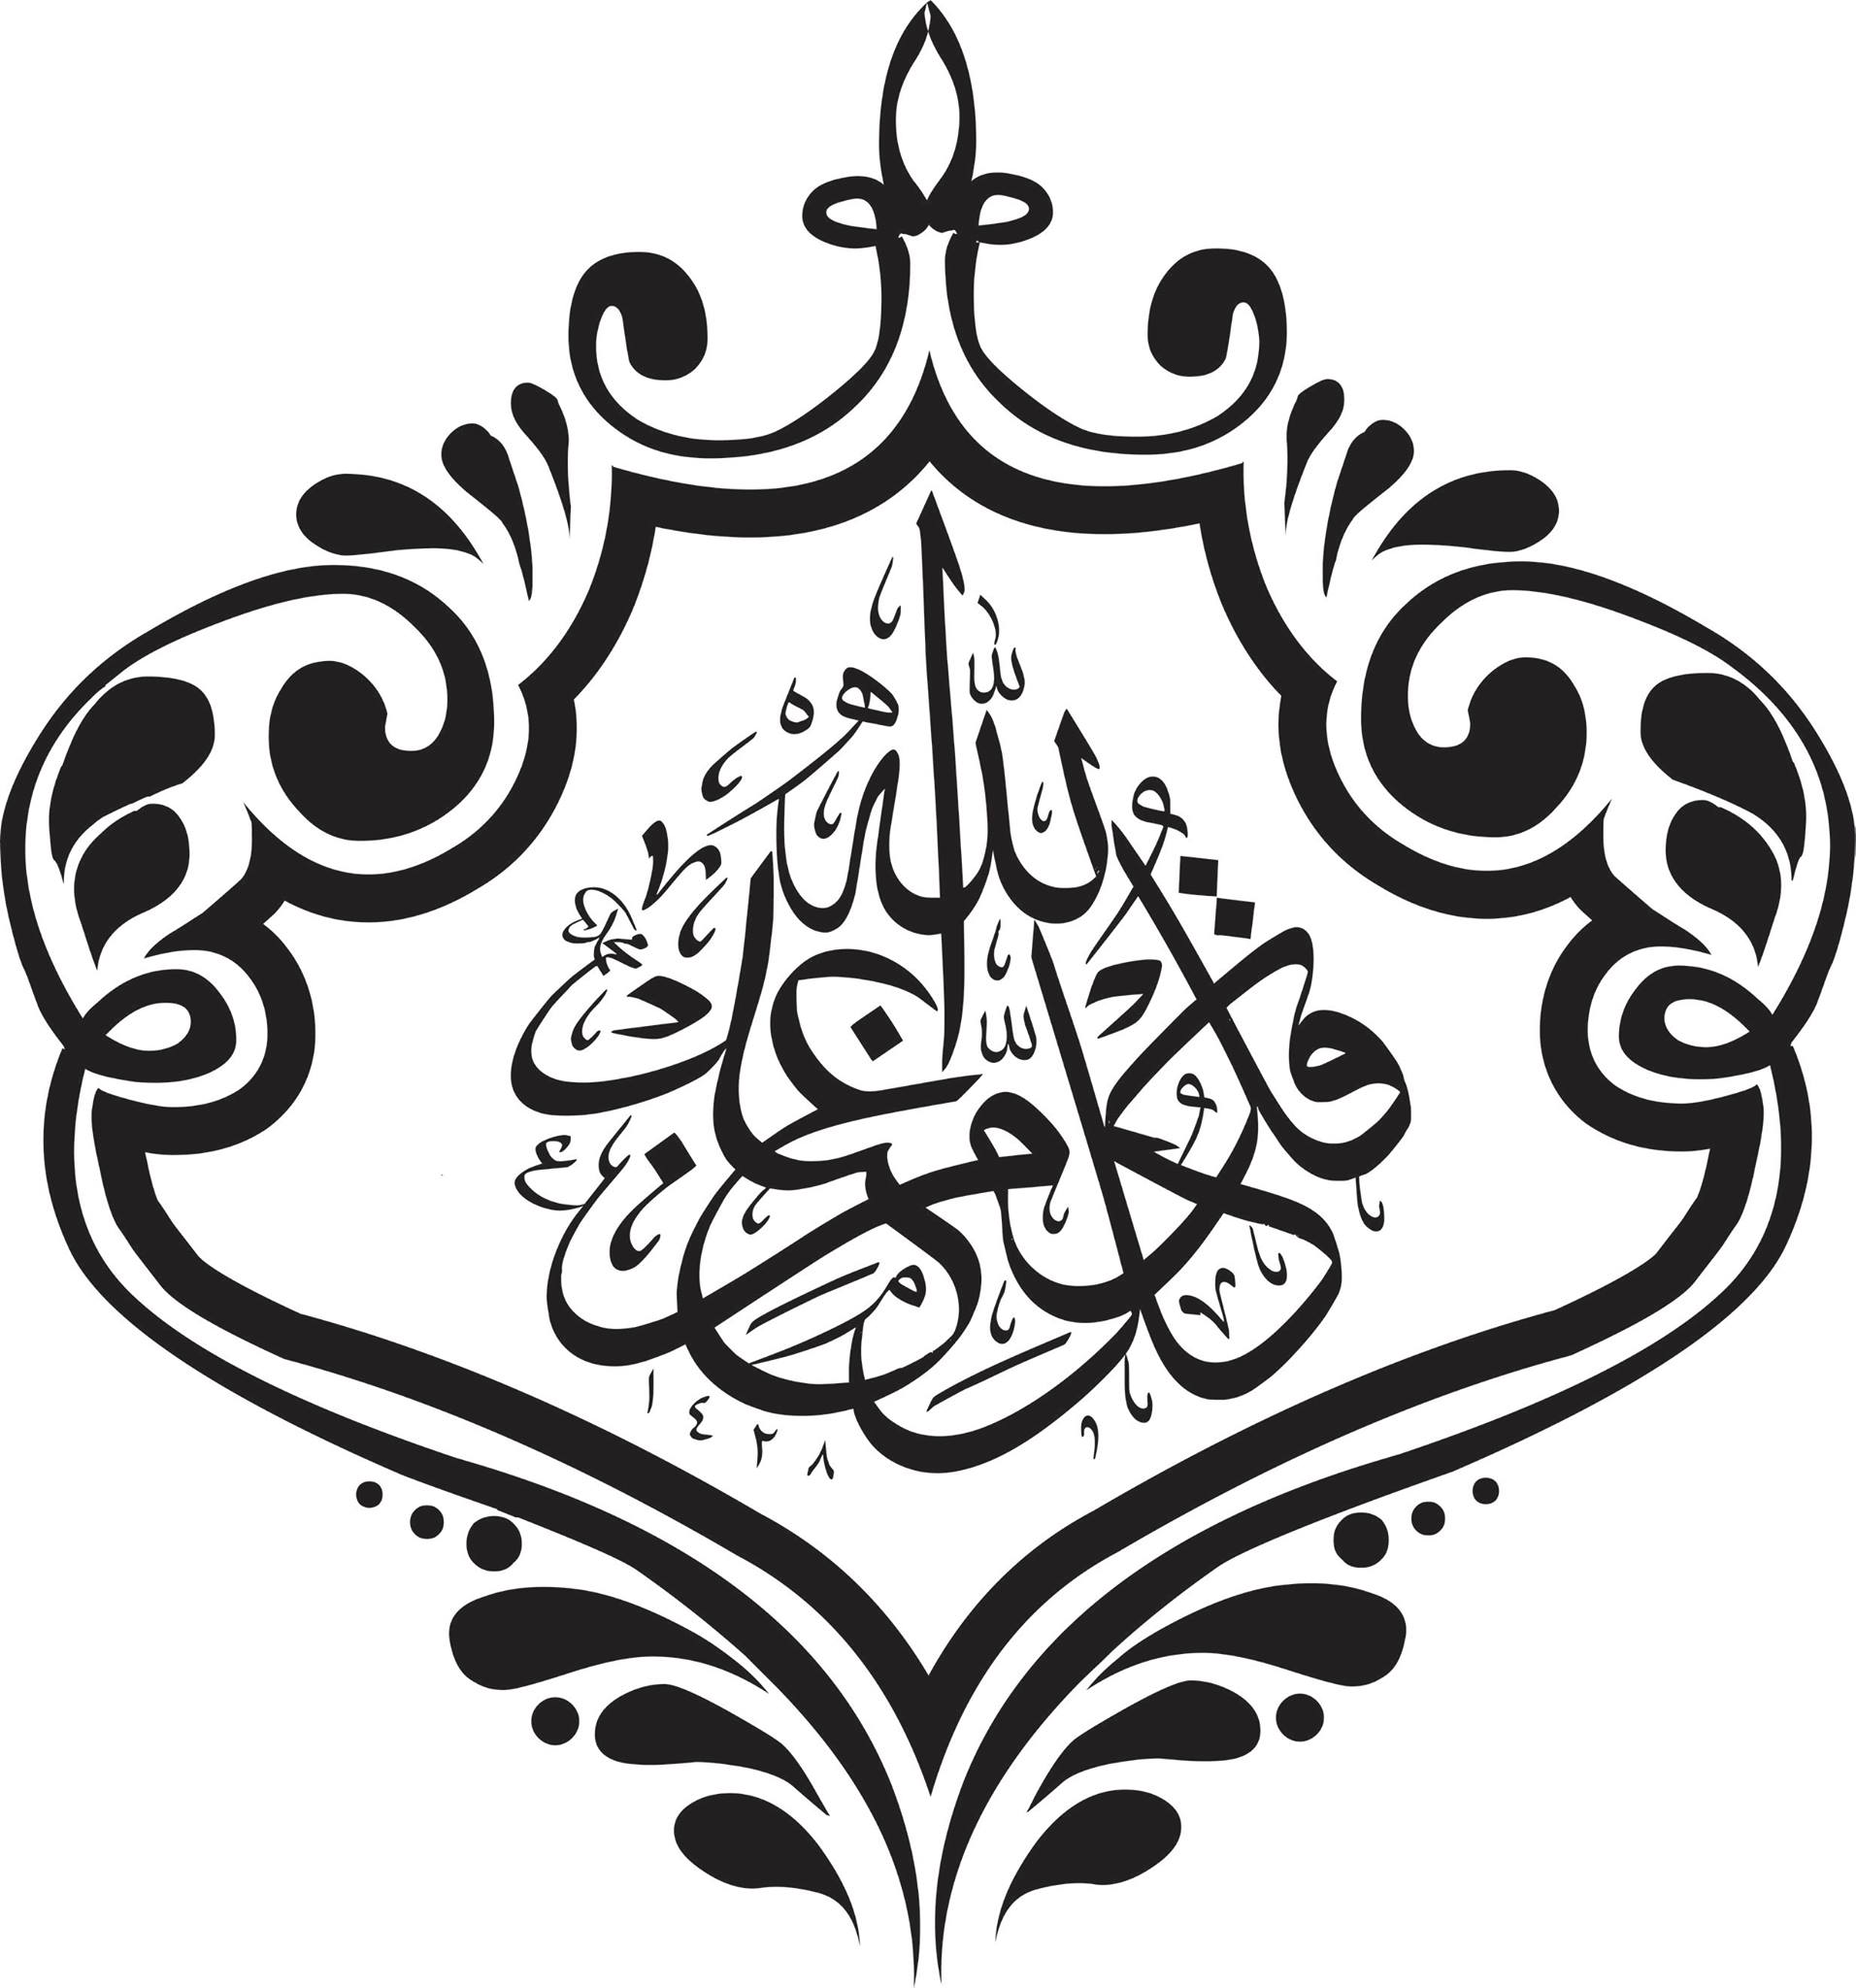 الخط العربي فن المتجهات jpg Image